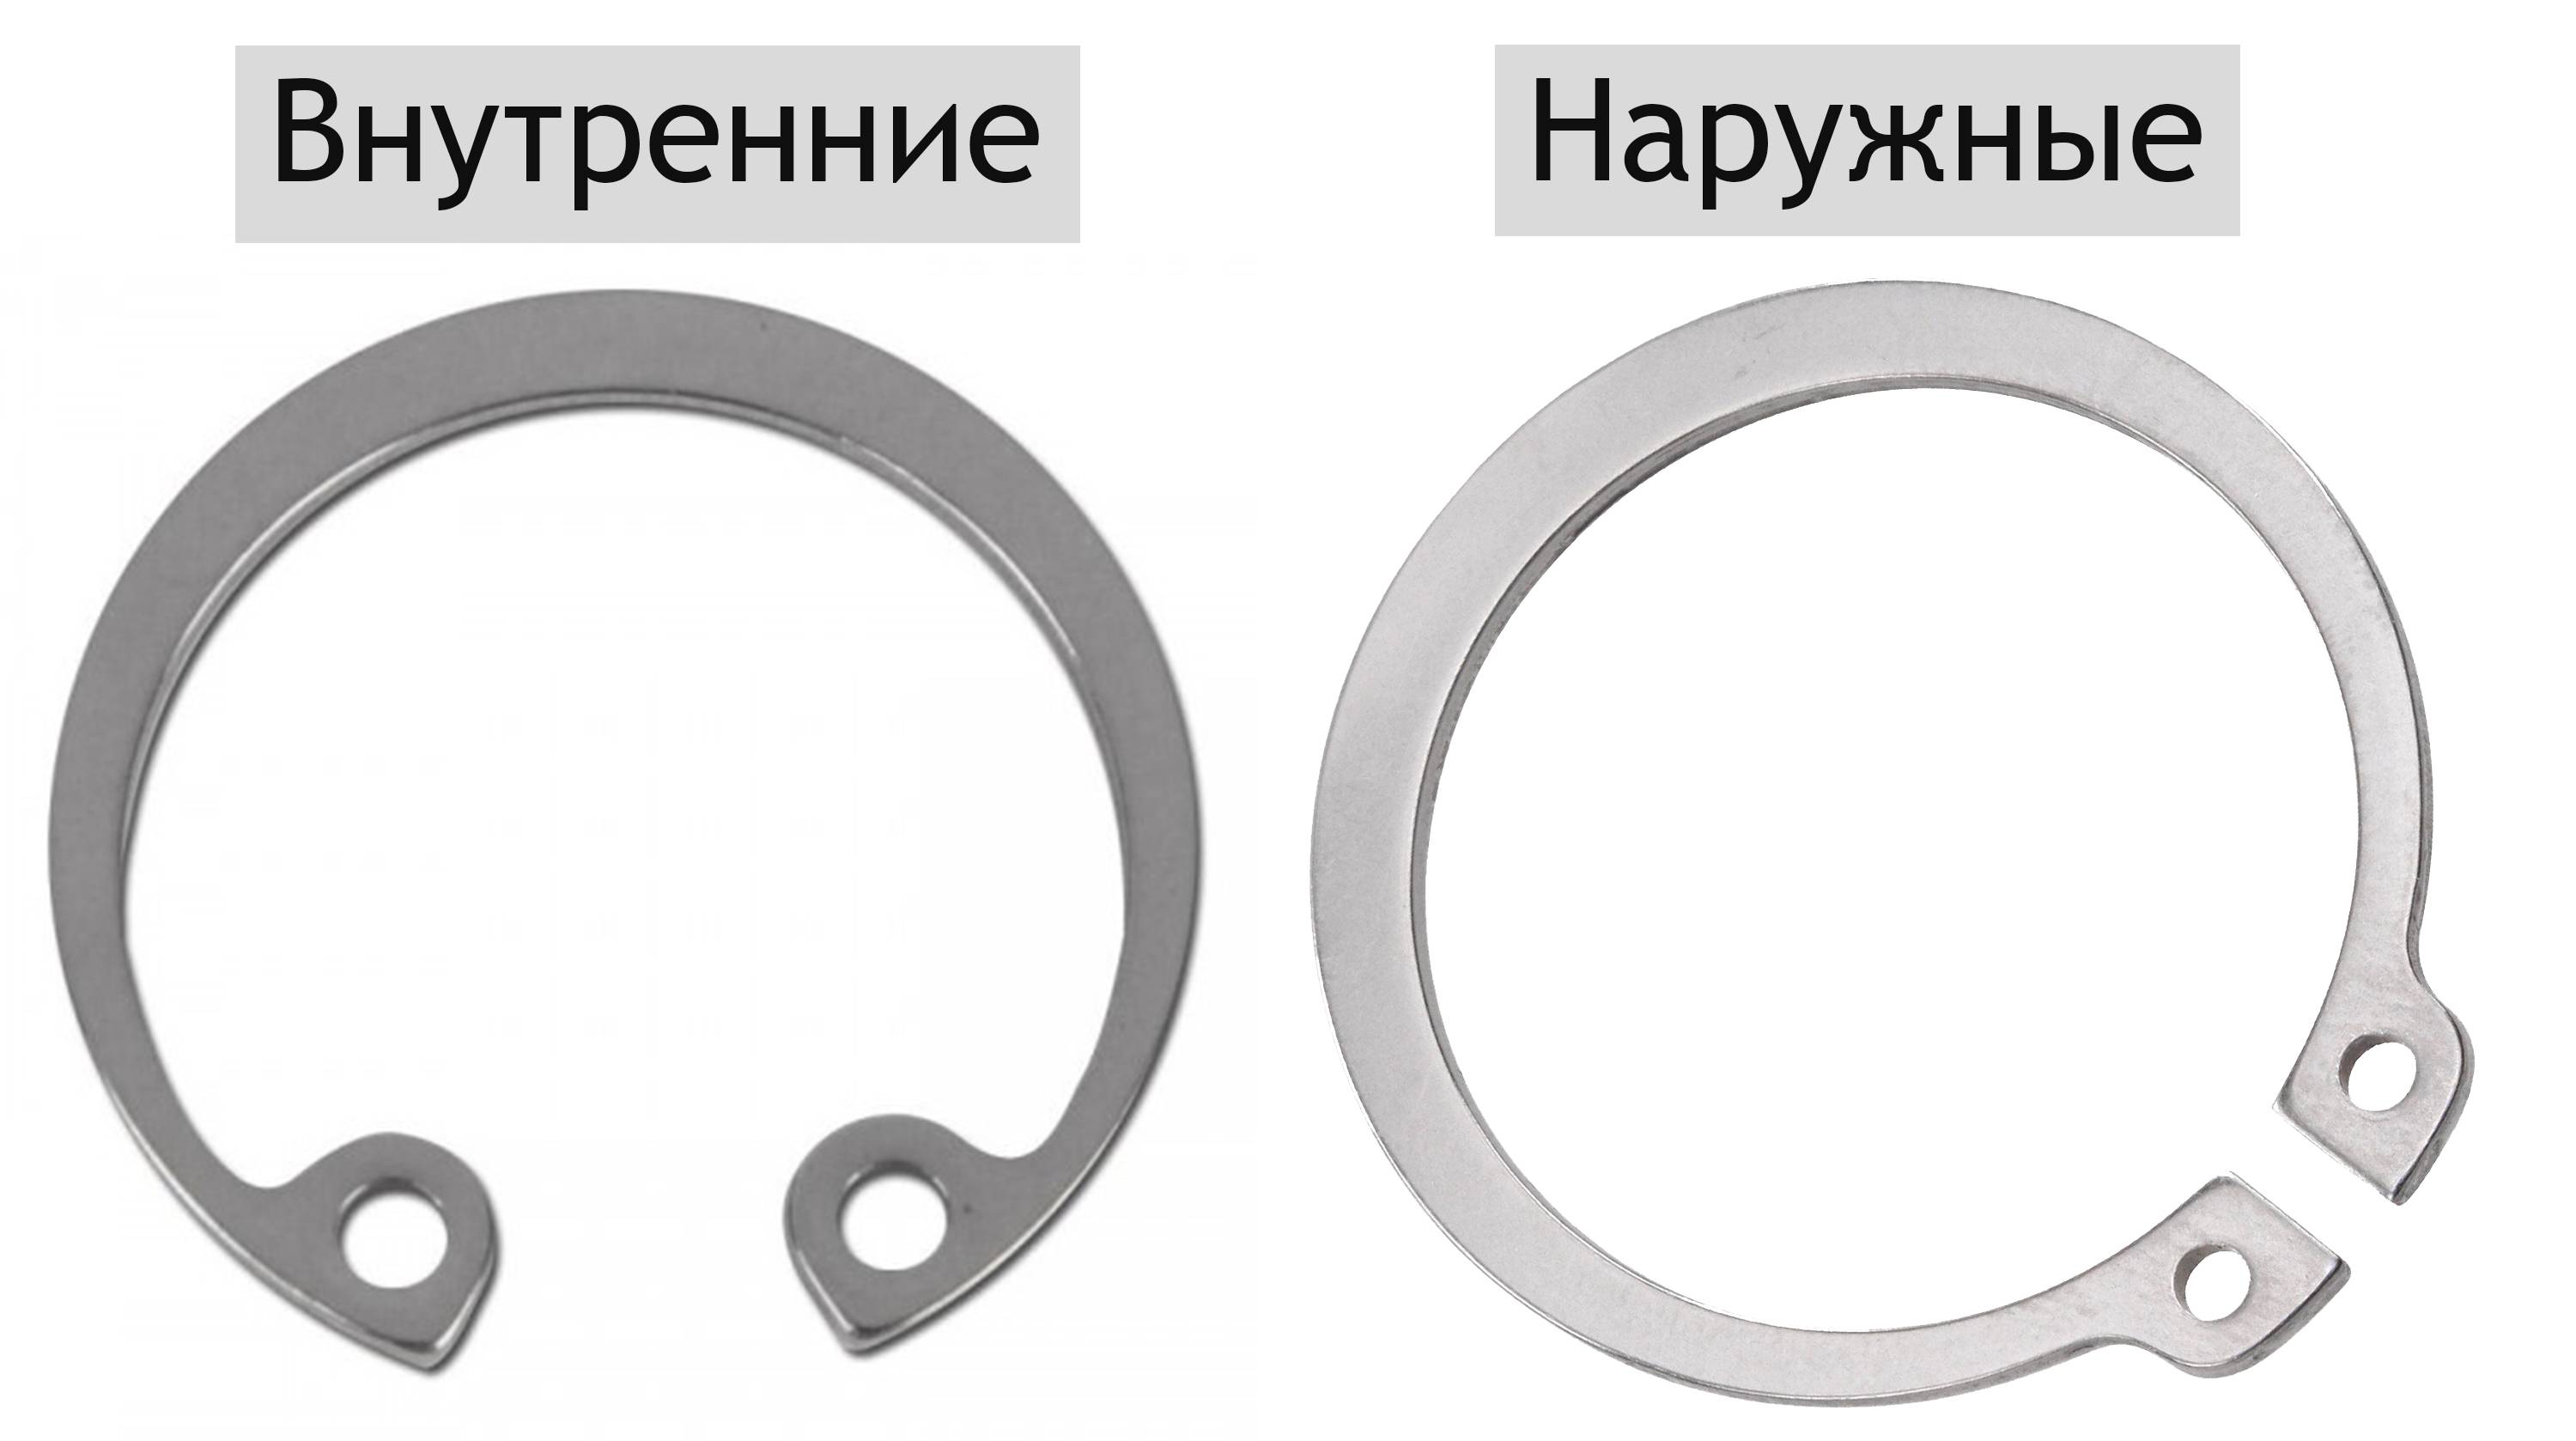 Таблица диаметров и других размеров стопорных колец